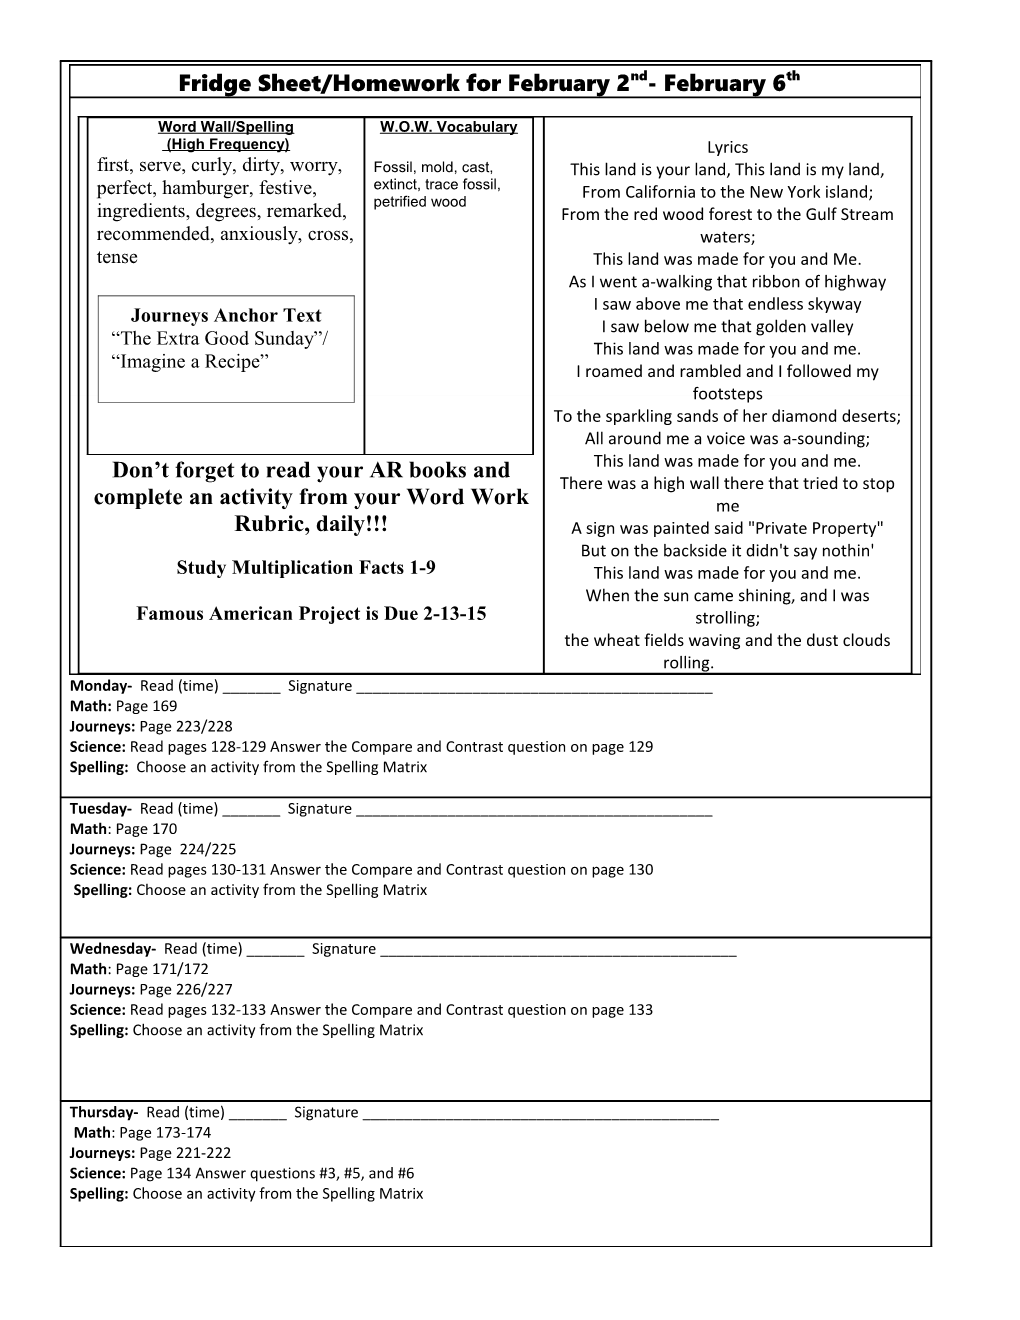 Fridge Sheet: Homework for August 27 Aug